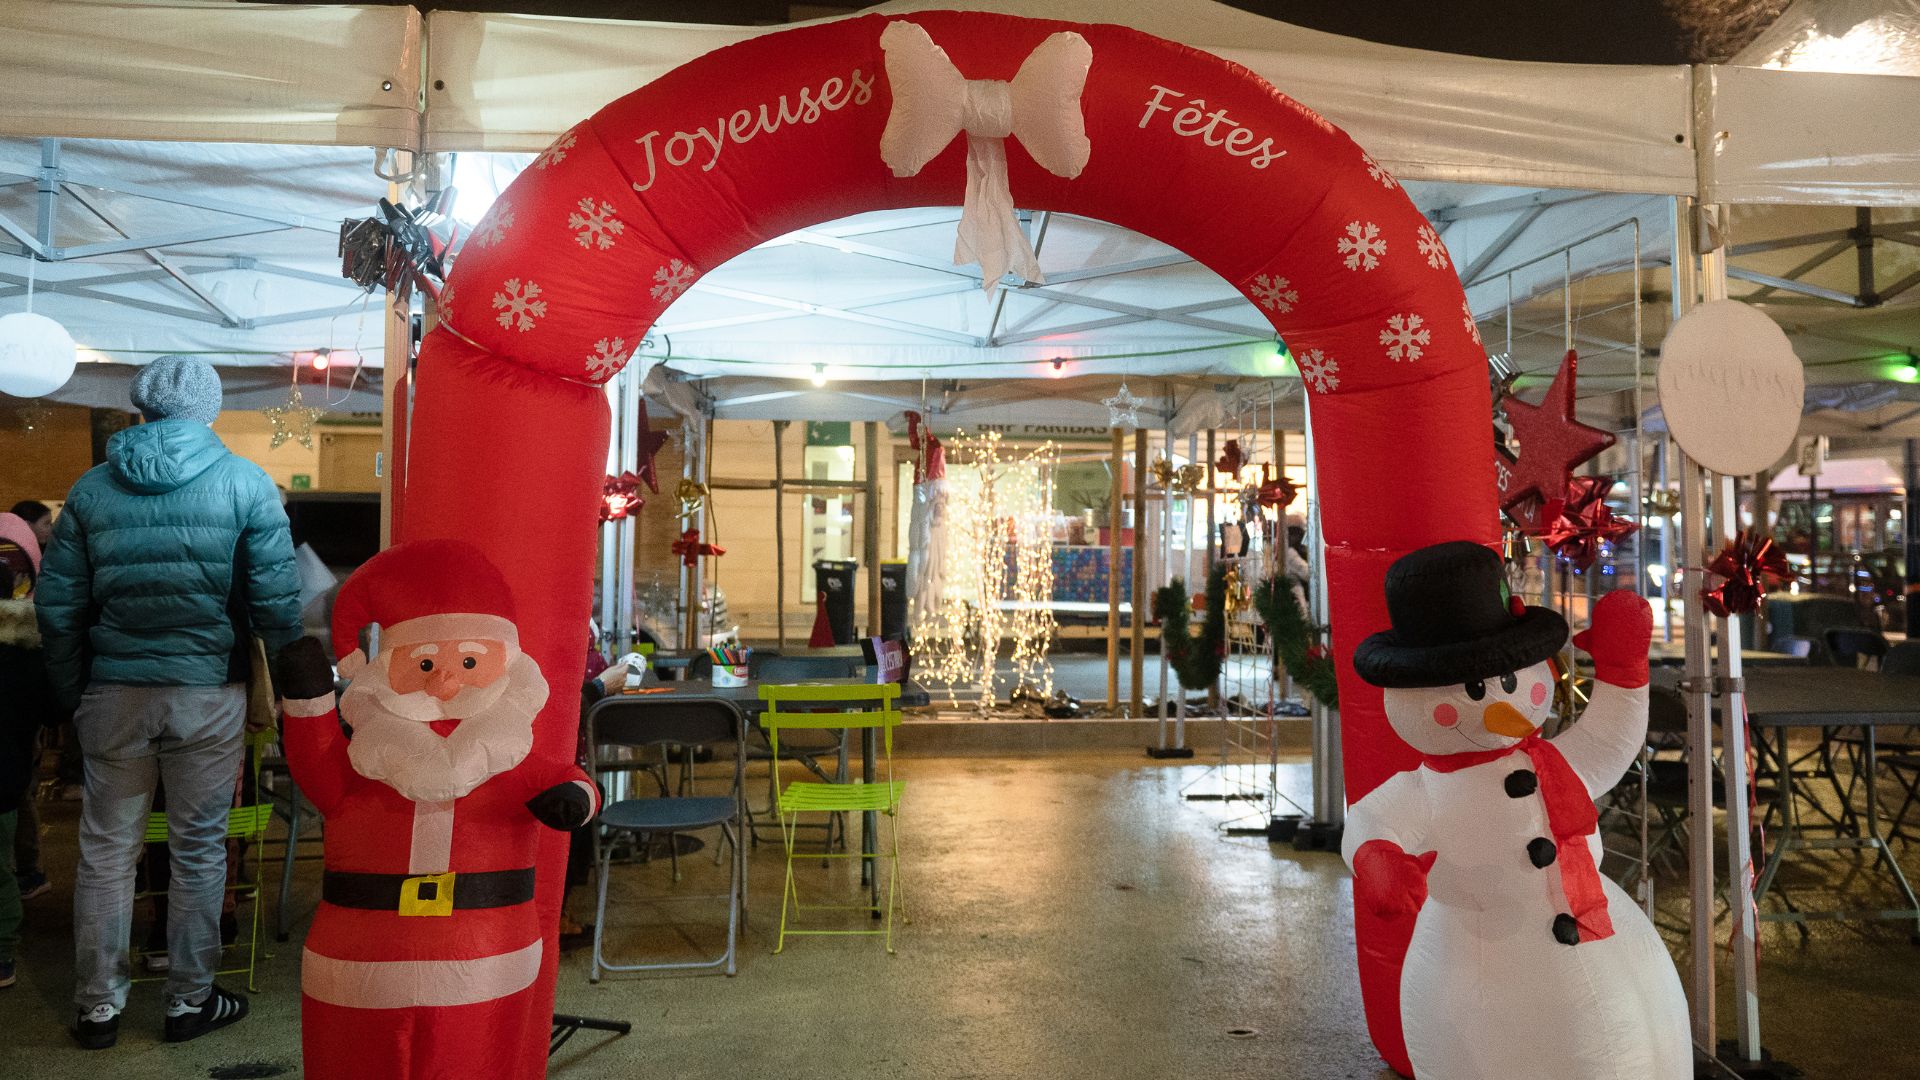 Photo du marché de Noël avec un boudin gonflable sur lequel est écrit Joyeuses fêtes